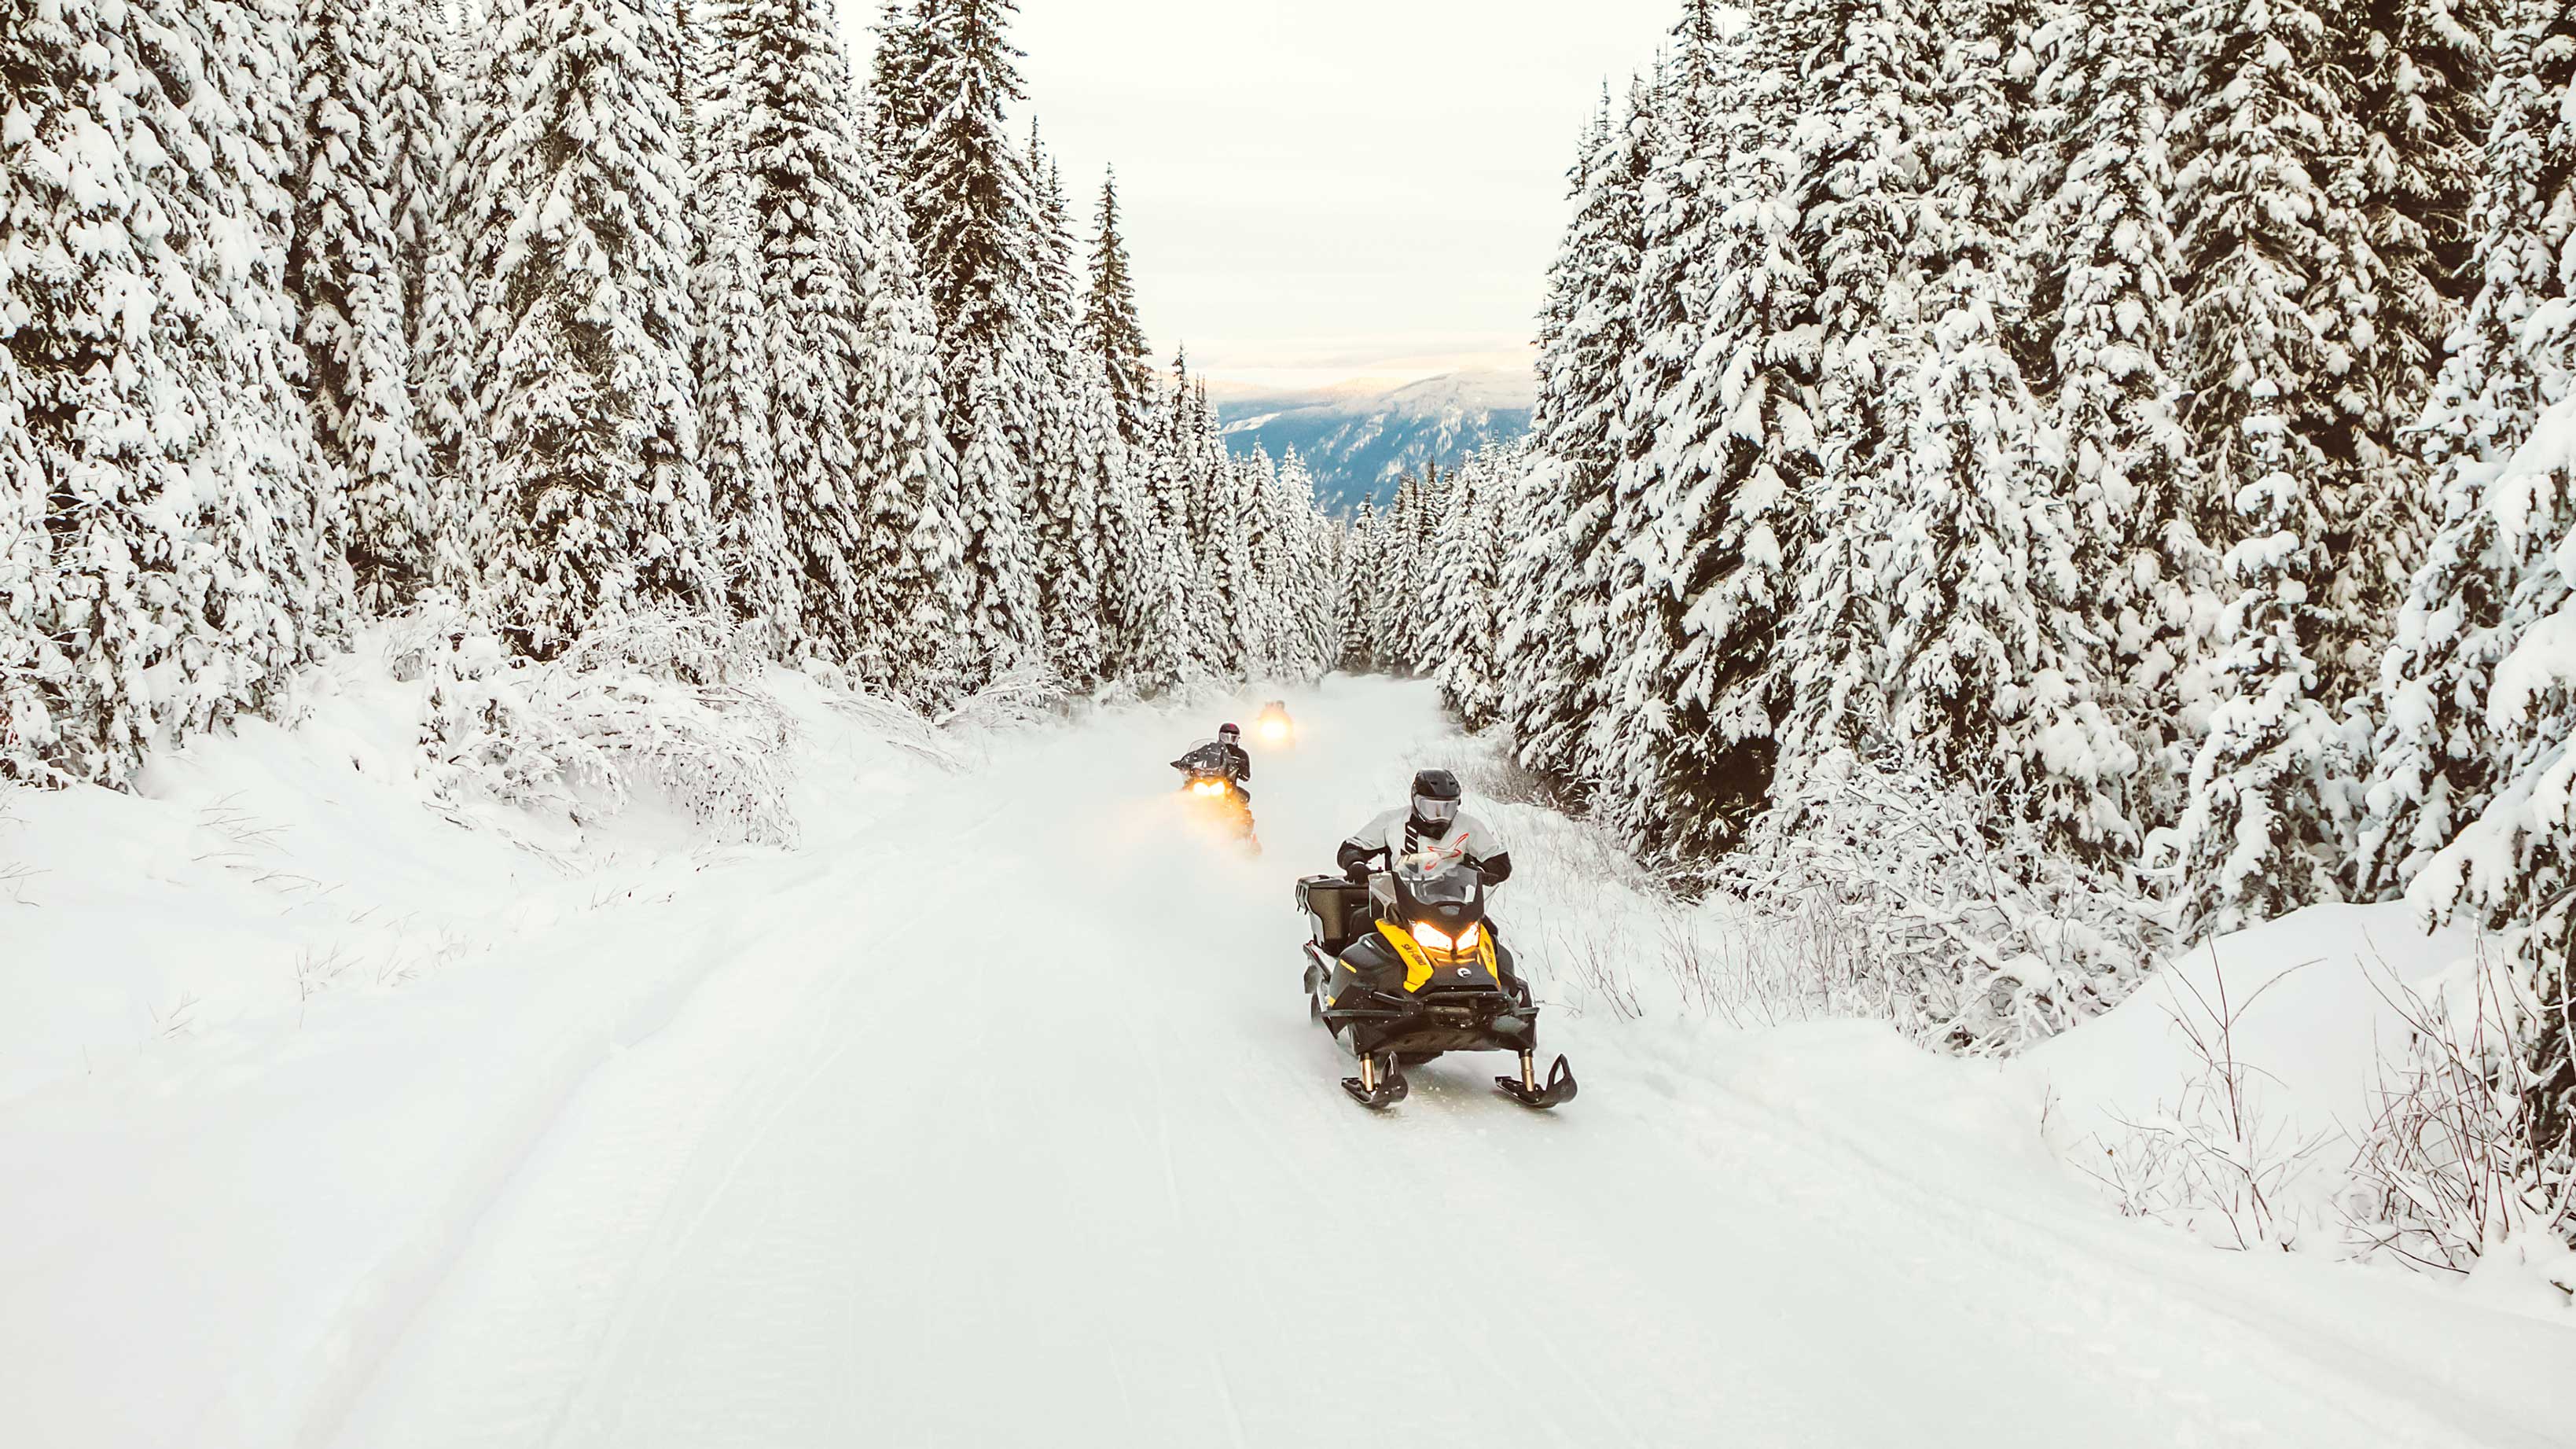  Dva Ski-Doo Tundra se hitro vozita po snežni poti